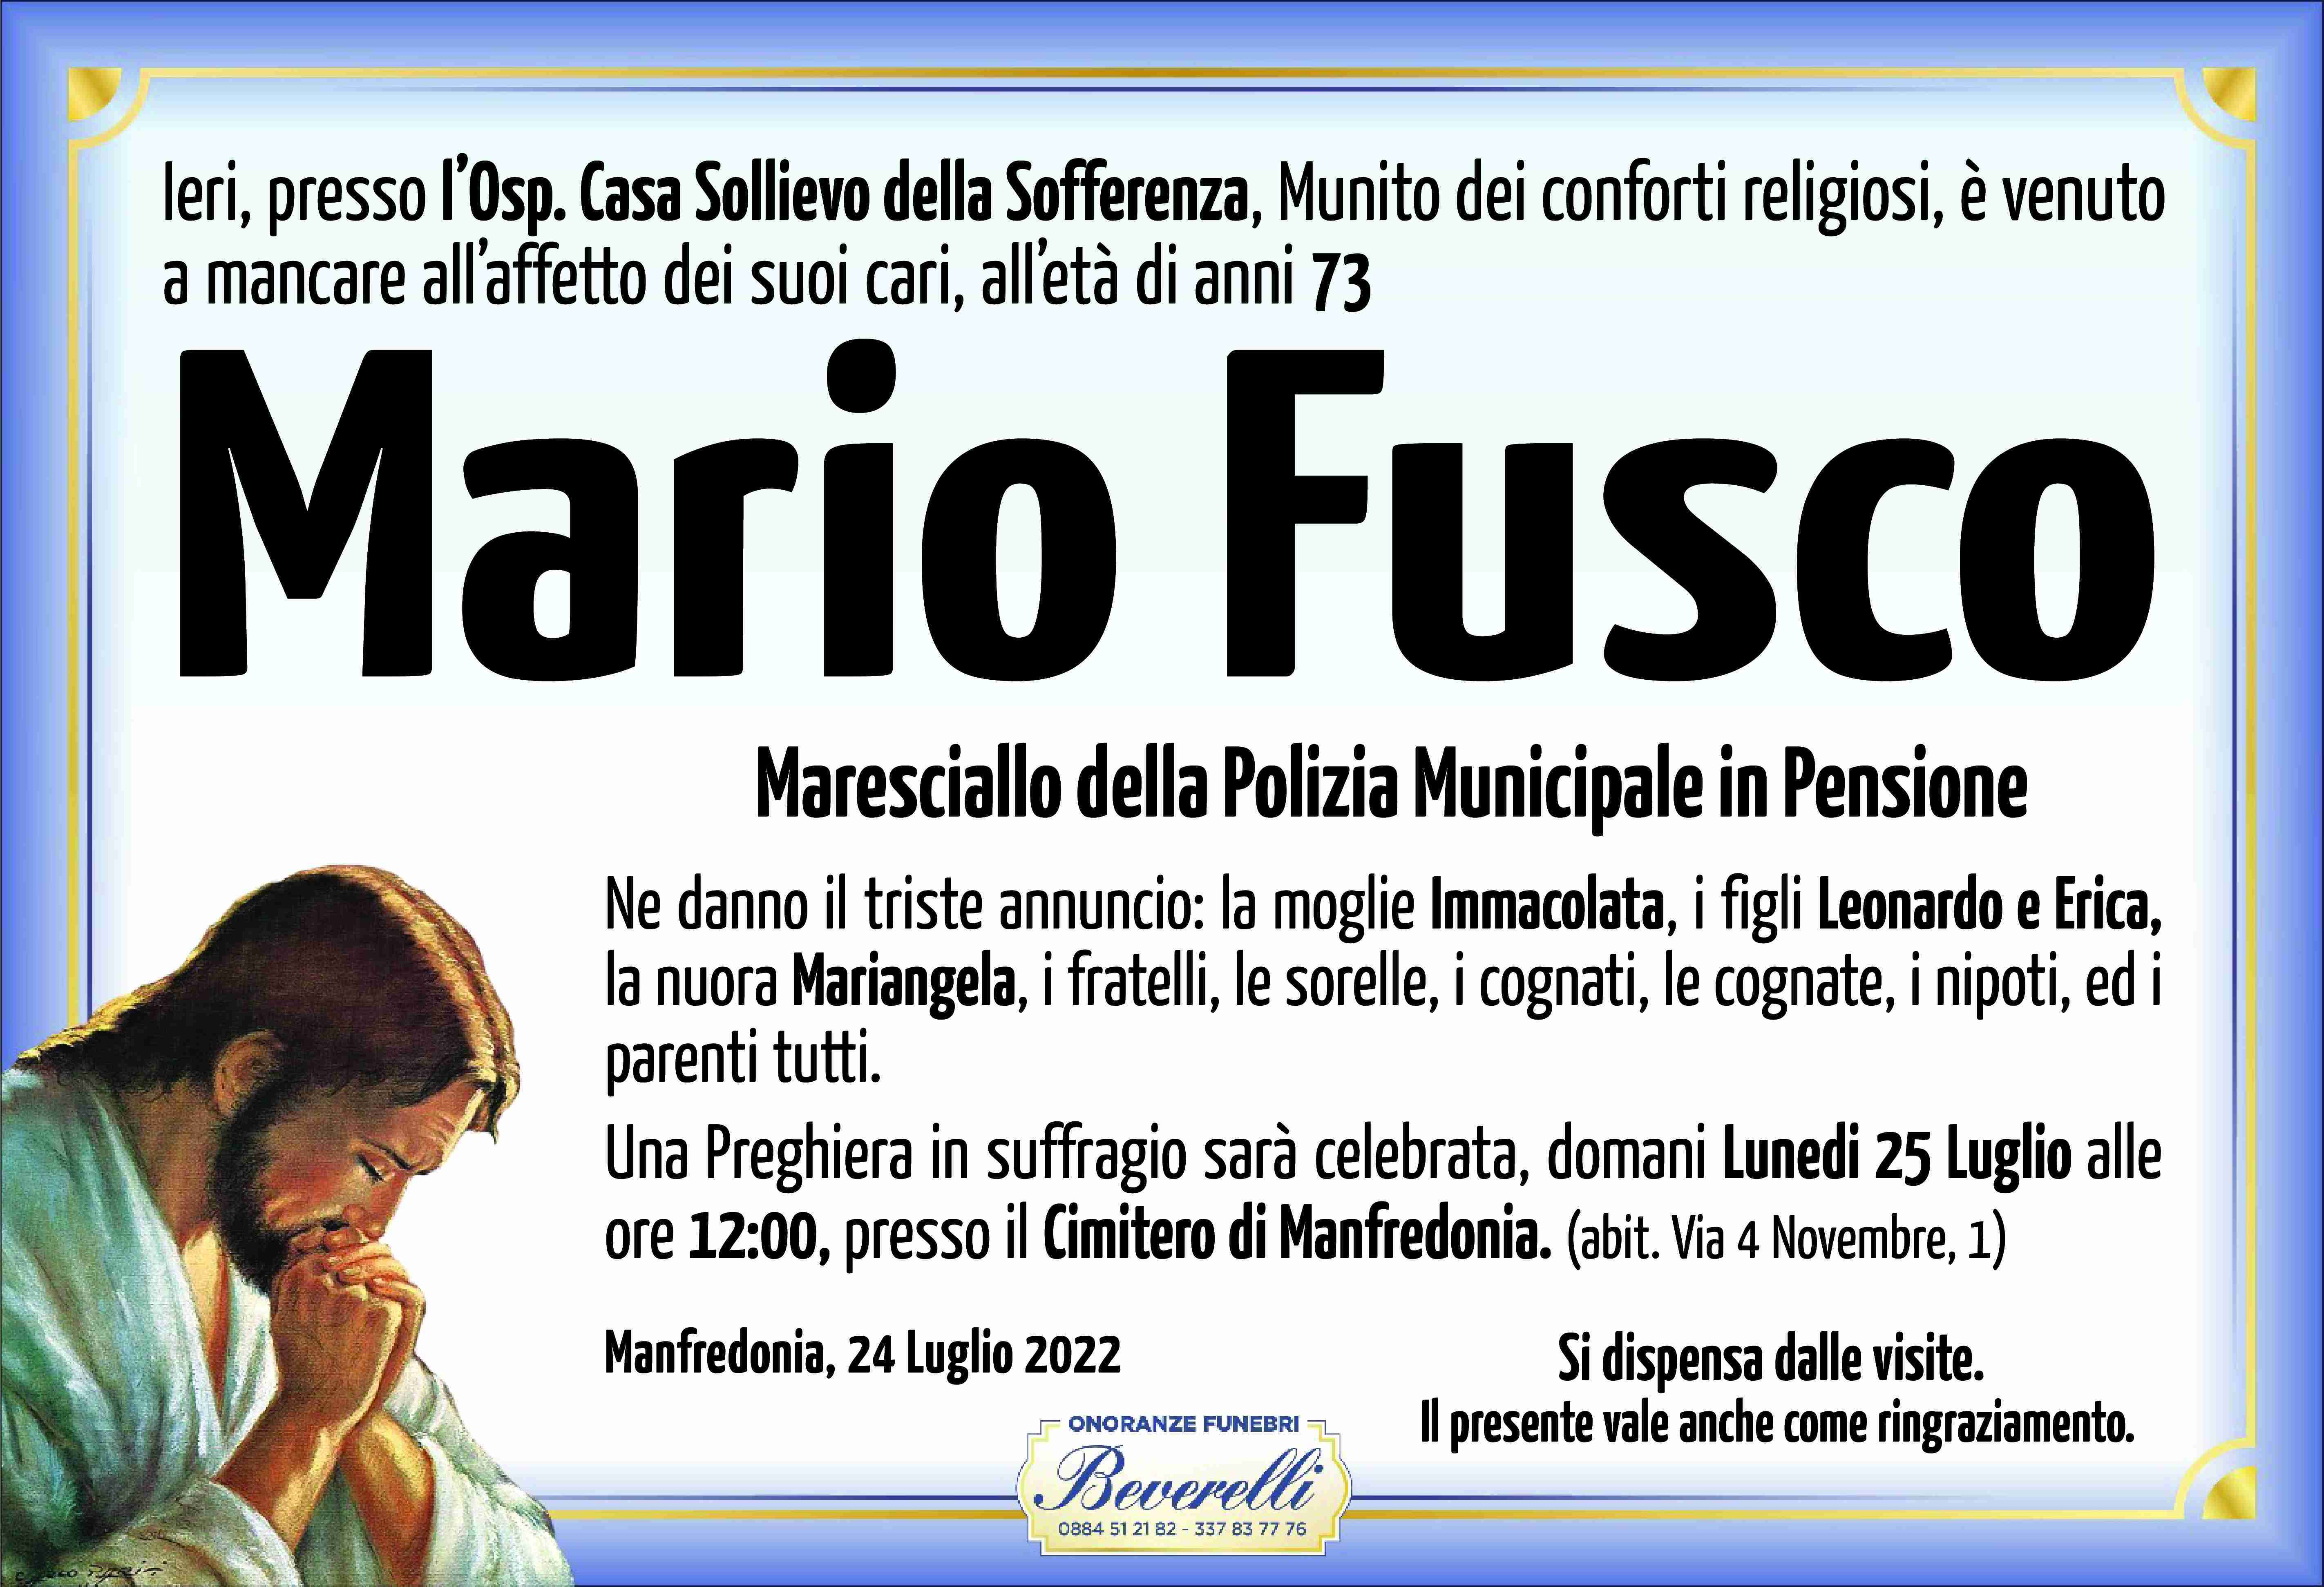 Mario Fusco